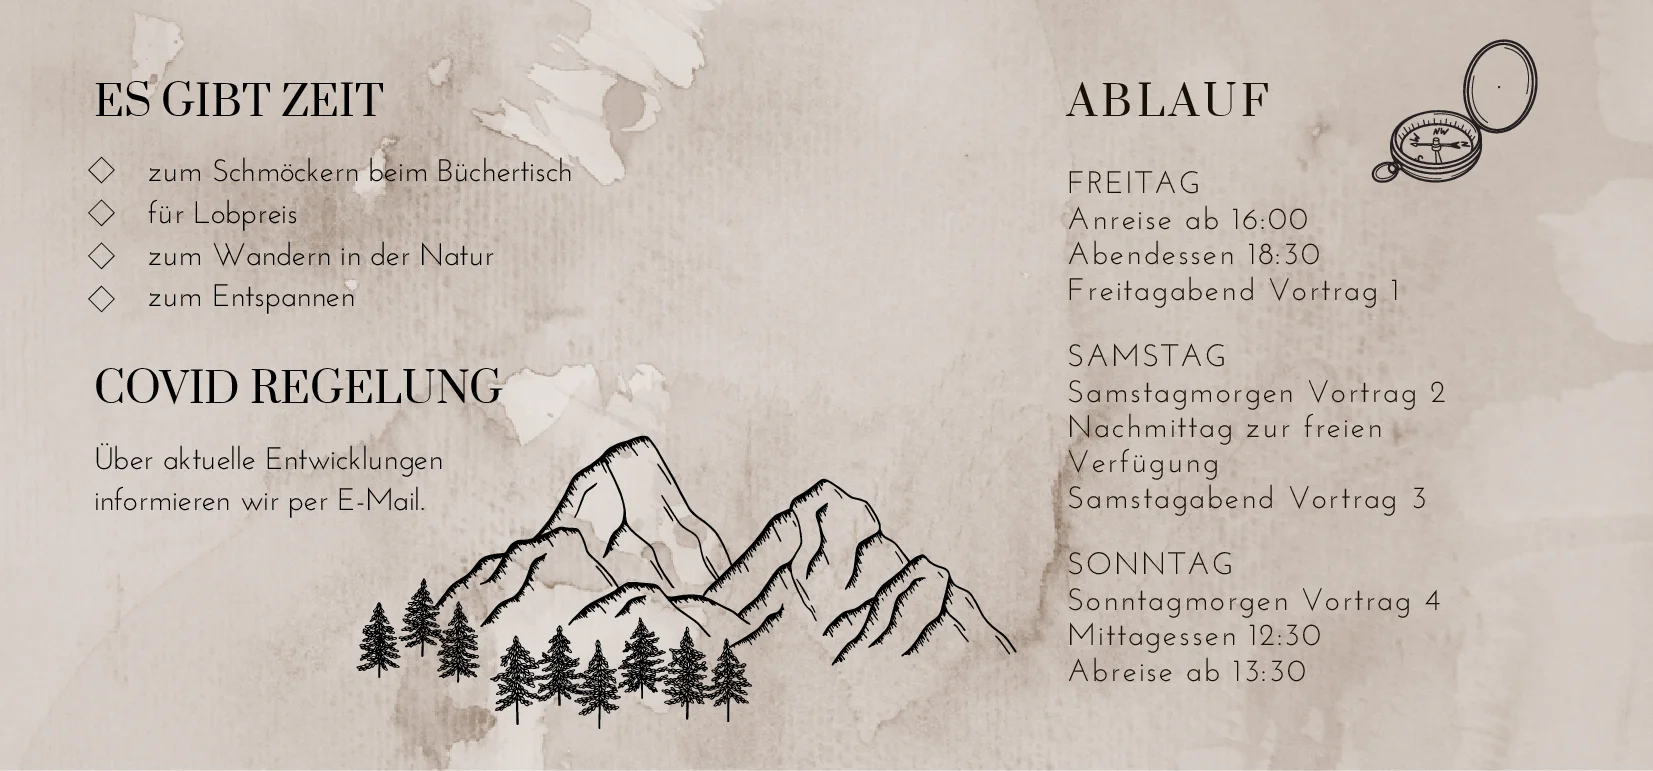 Einladung zur ARGEGÖ Frauenfreizeit Region Tirol 